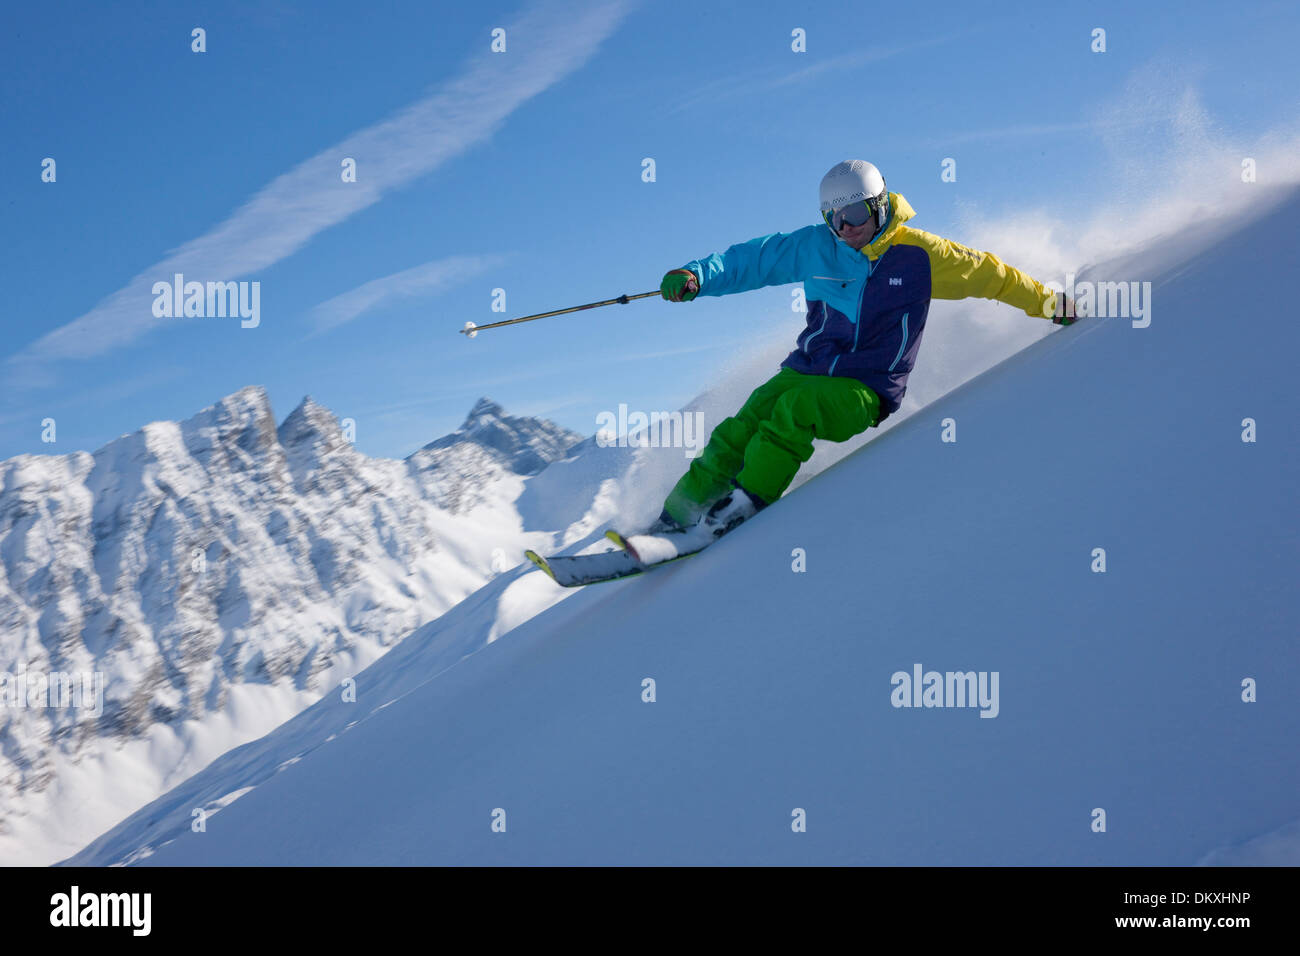 Suiza Europa tiempo libre deporte aventura deportes invernales canton Graubünden Grisones GR Tallar Esquí Esquí Ski Foto de stock